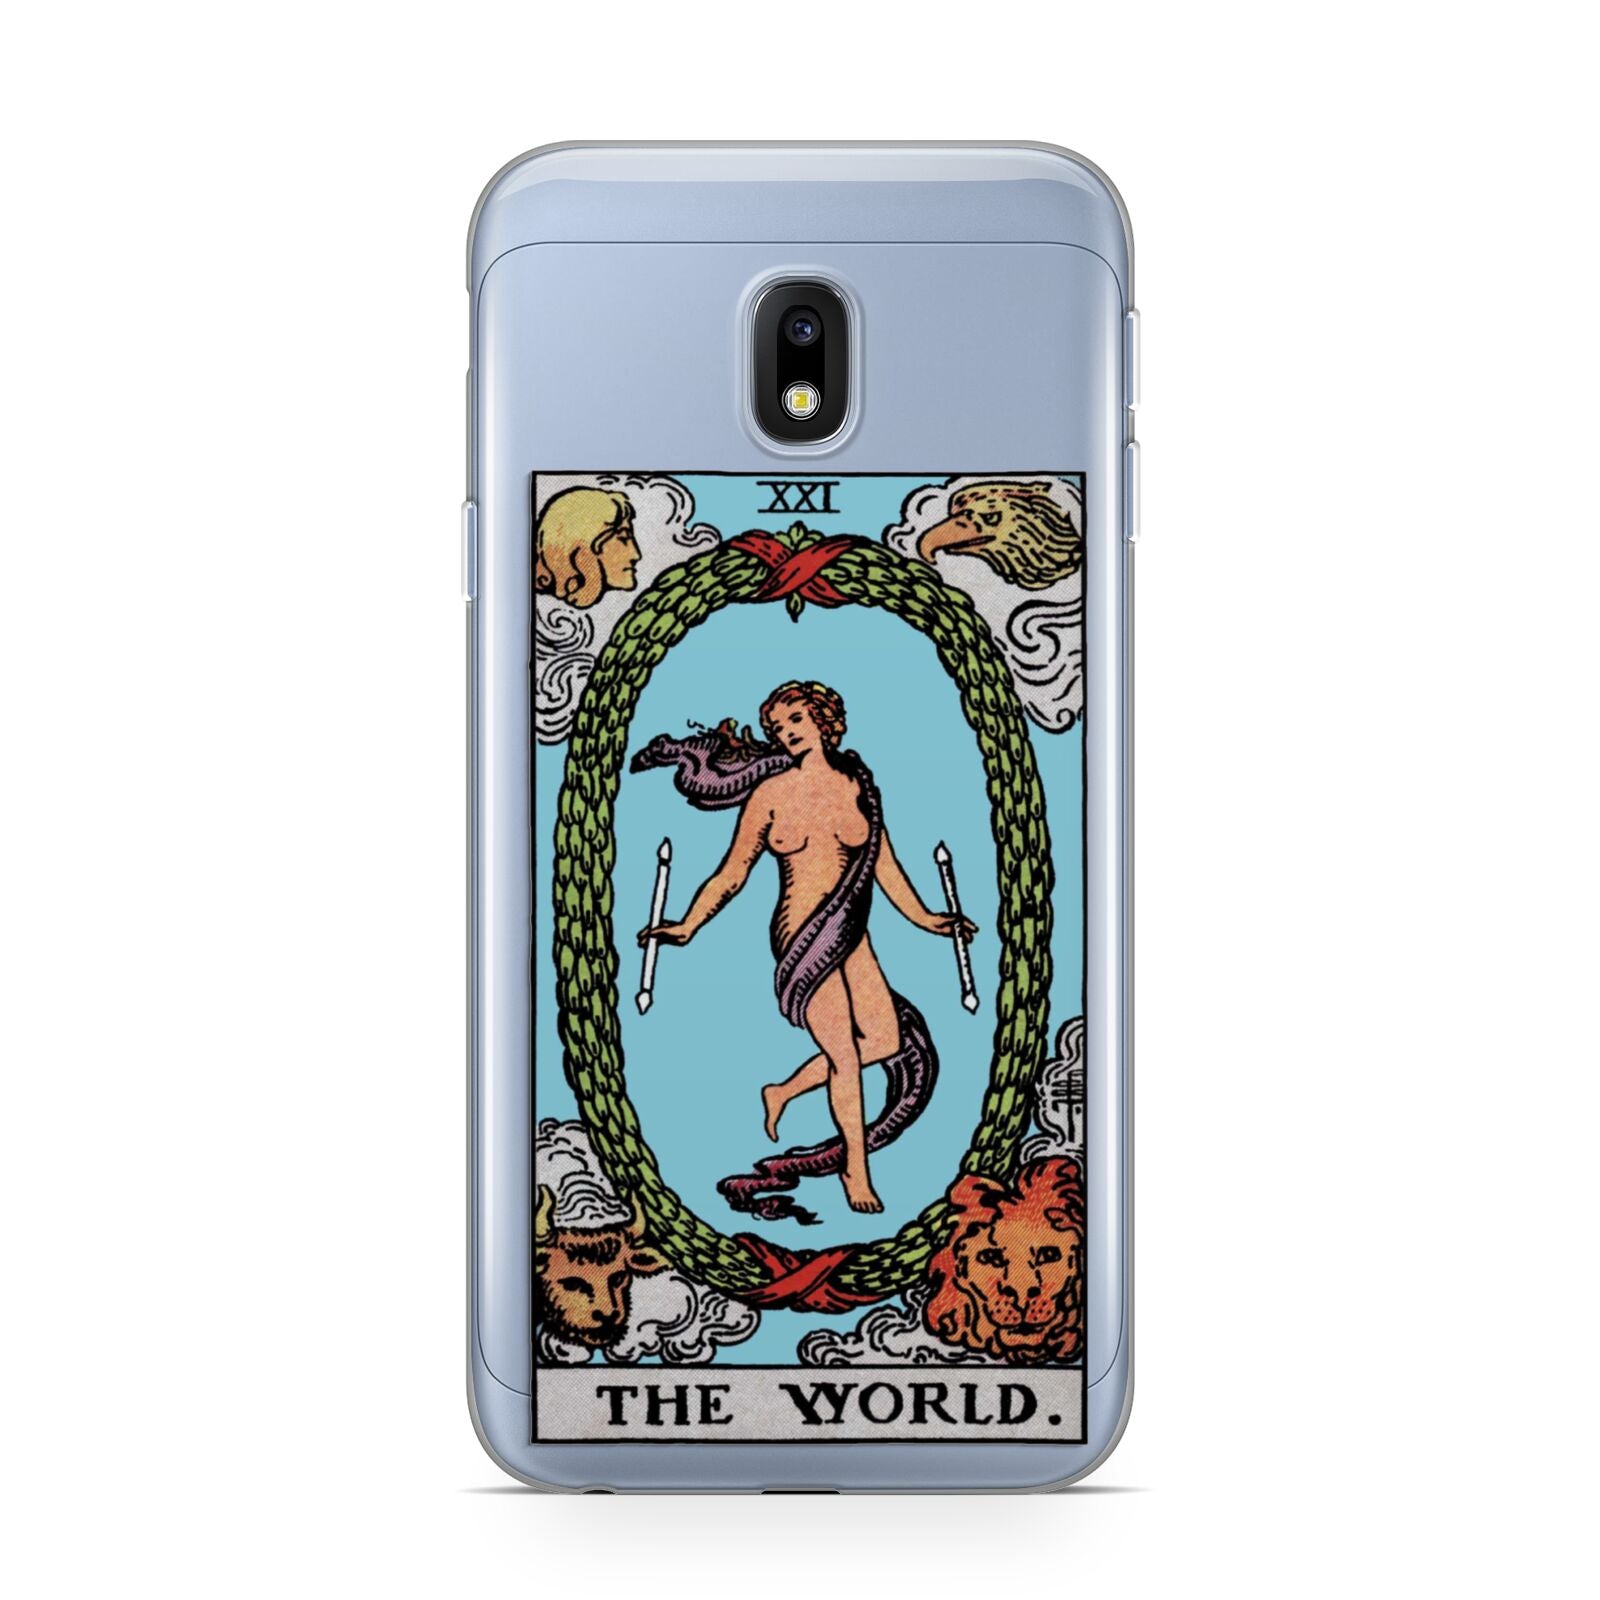 The World Tarot Card Samsung Galaxy J3 2017 Case